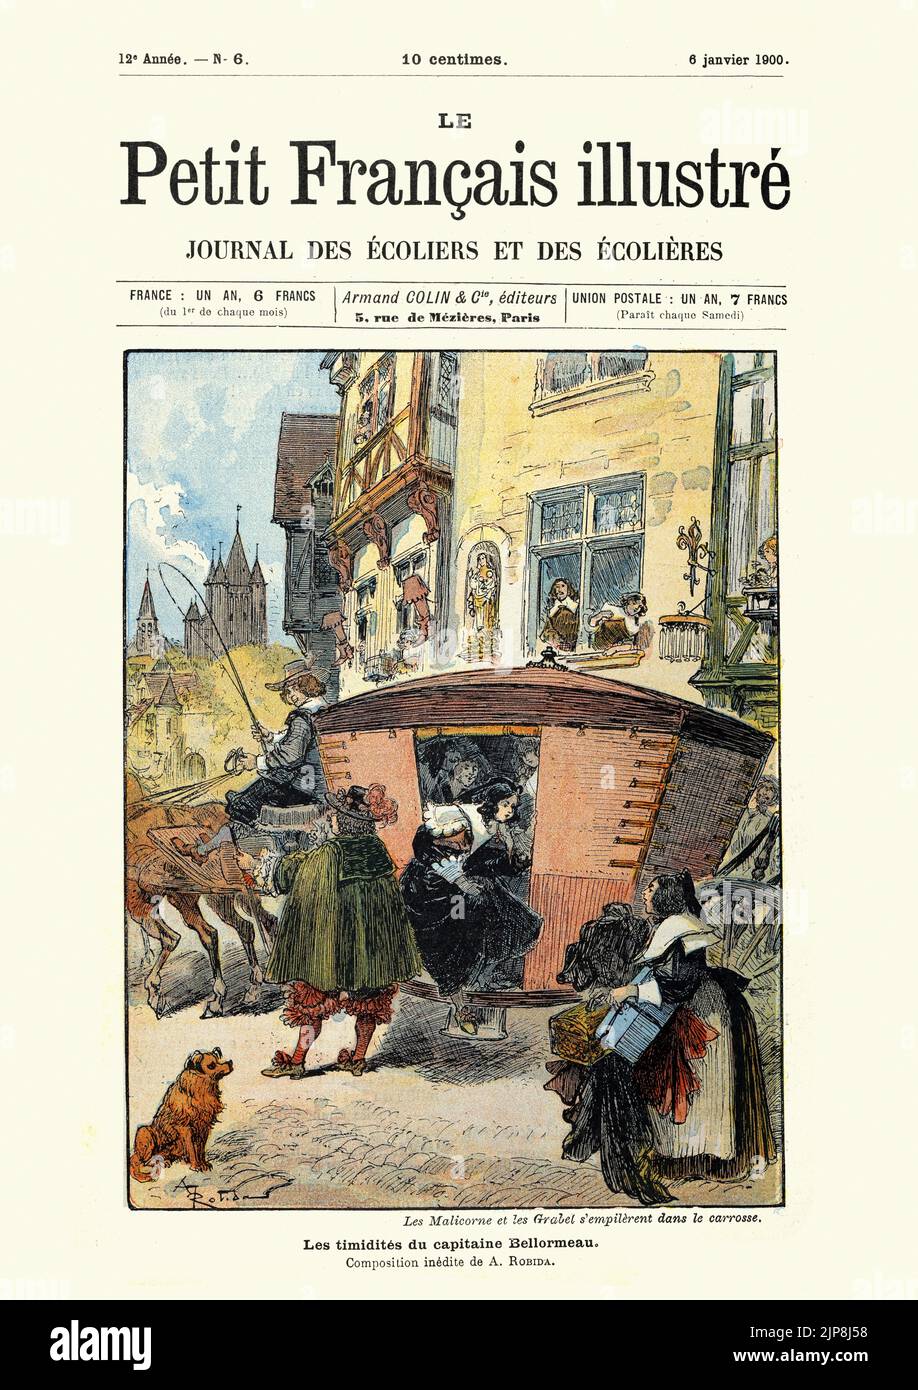 Ilustración del libro 'Le Capitaine Bellormeau', de Robida. Los Malicornes y los Grabels se amontonan en el carruaje. Les Foto de stock